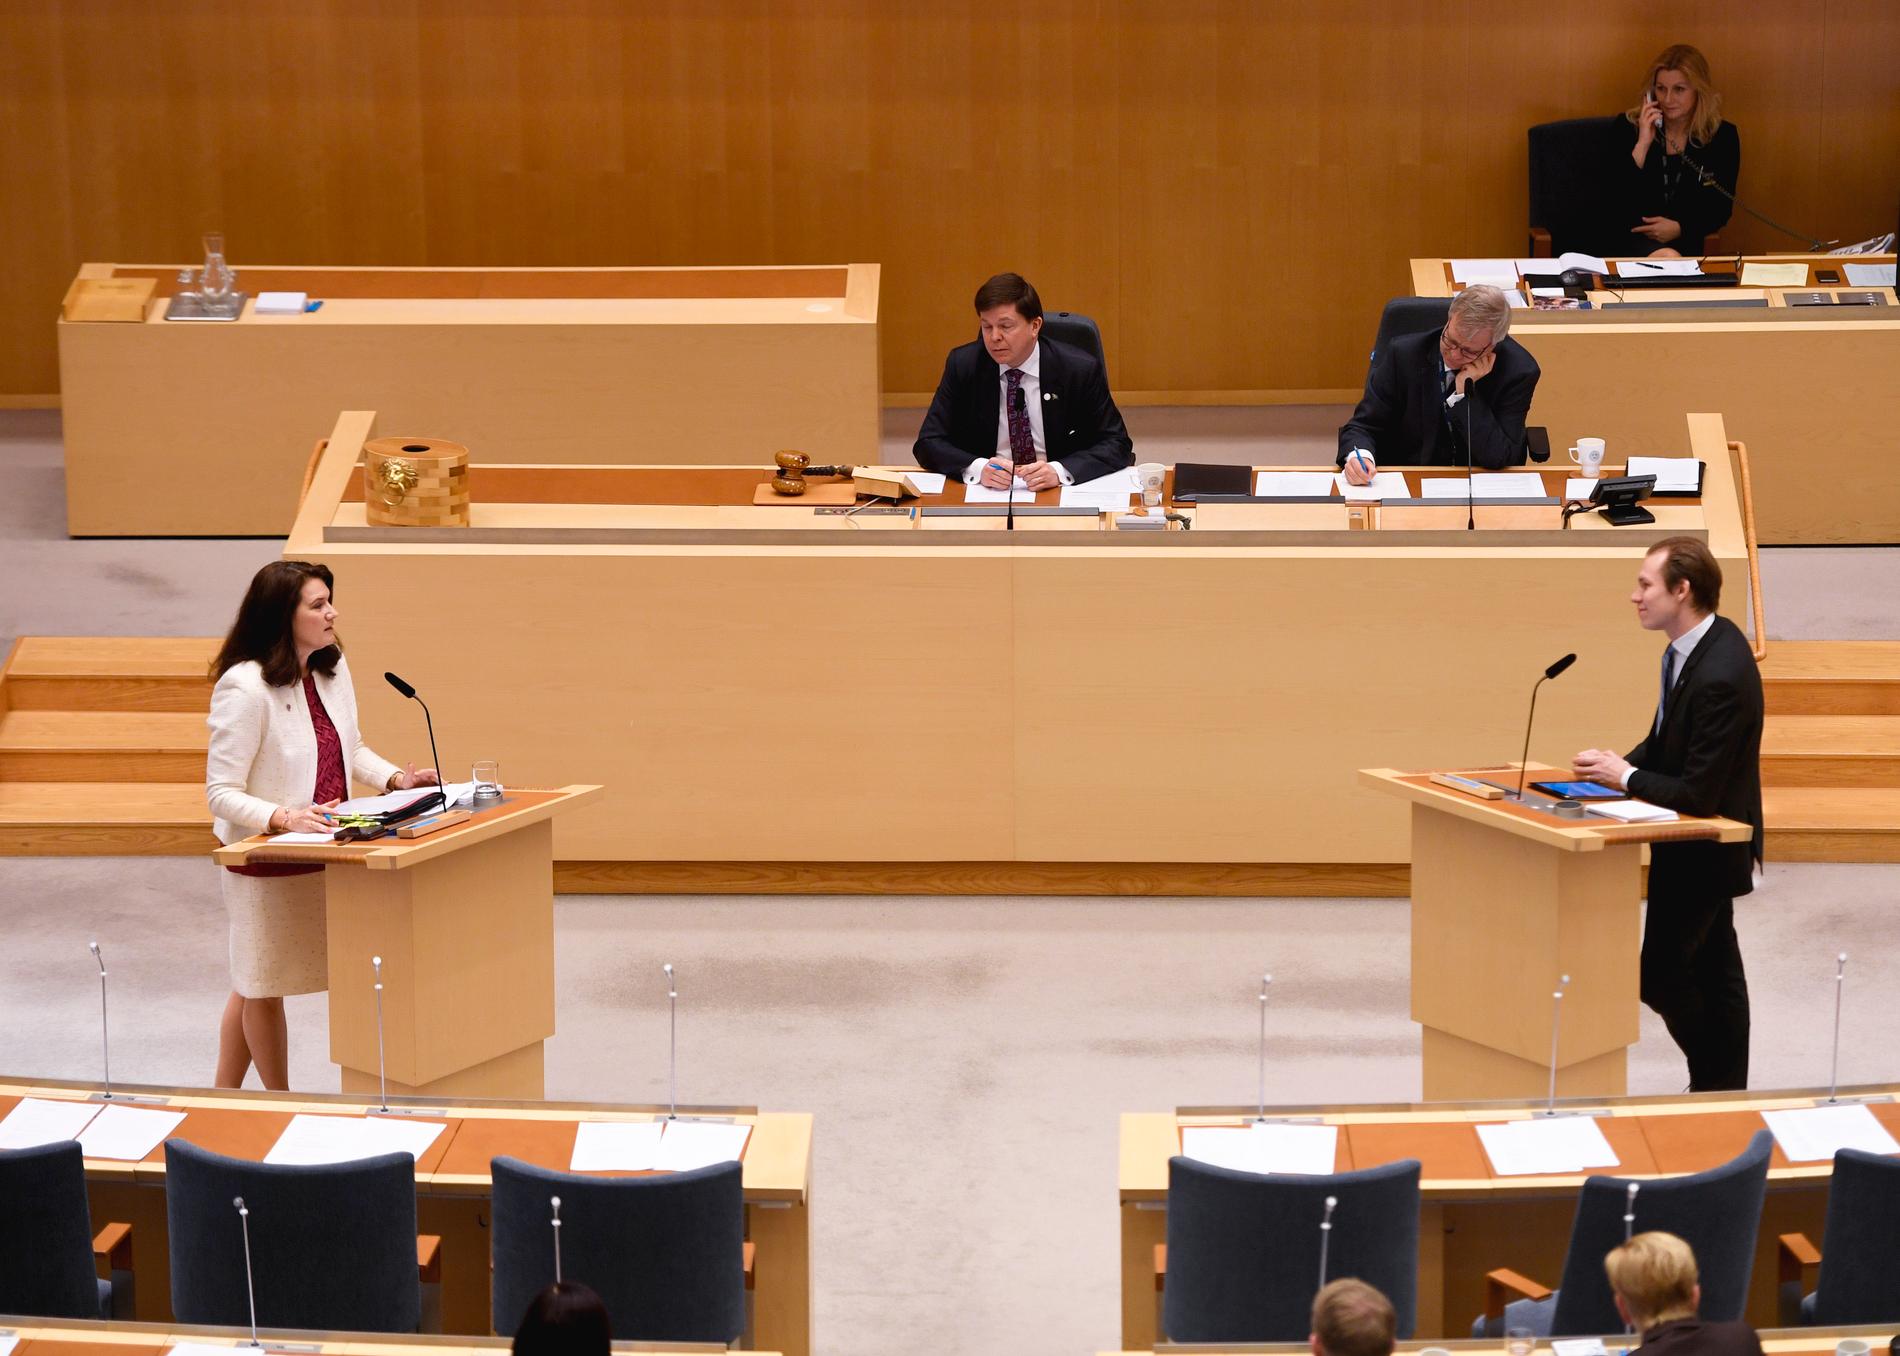 Utrikesminister Ann Linde (S) och Markus Wiechel (SD) debatterar under den utrikespolitiska debatten i riksdagen i Stockholm.